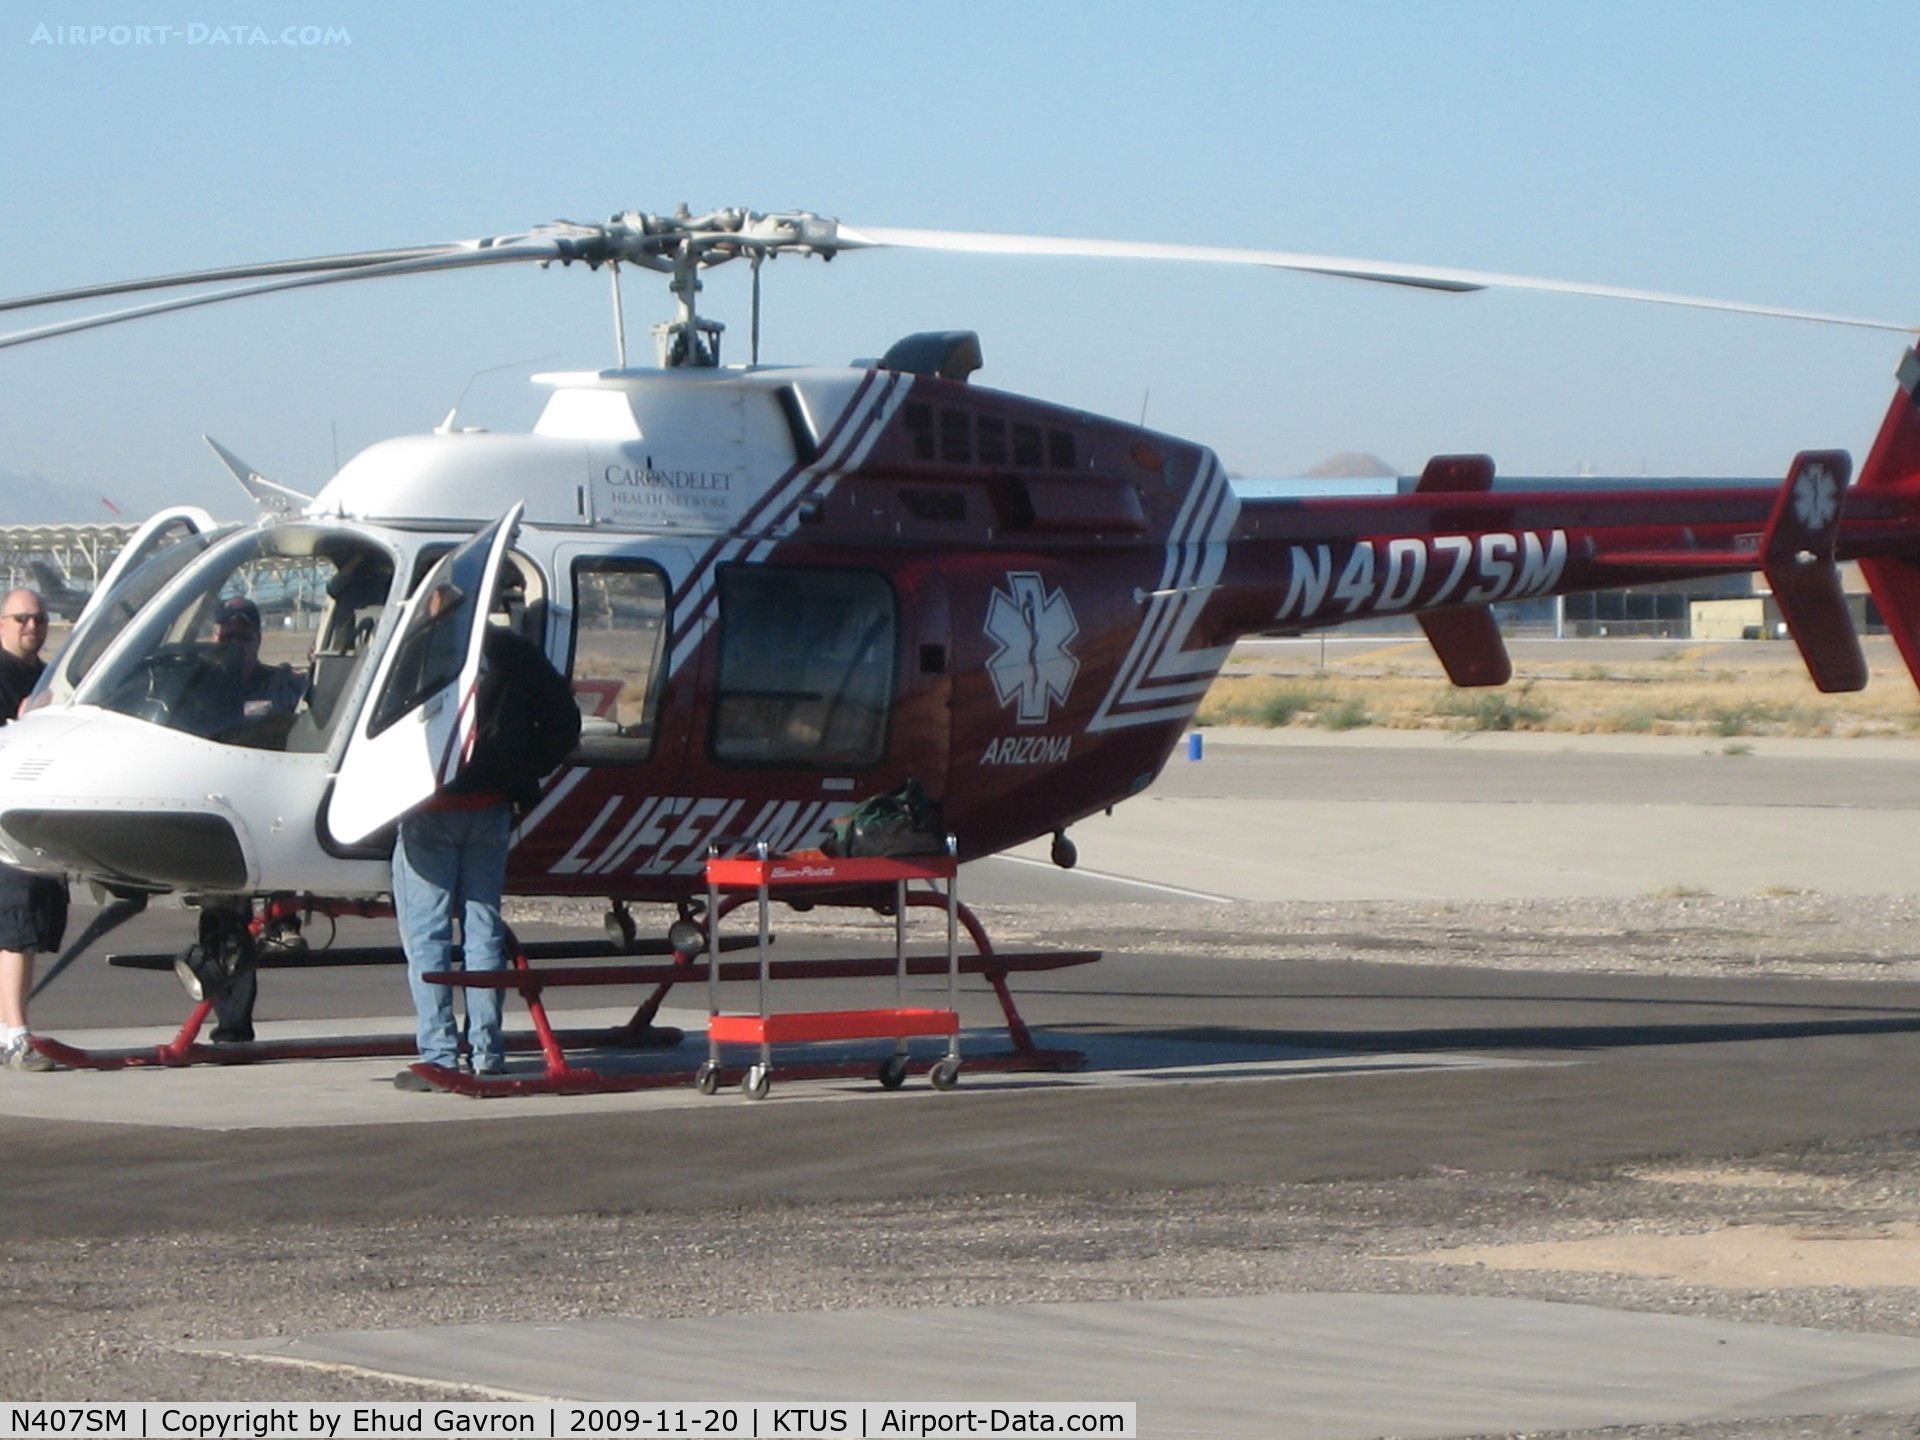 N407SM, 1998 Bell 407 C/N 53289, Lifeline Helicopter at Med-Trans Hangar